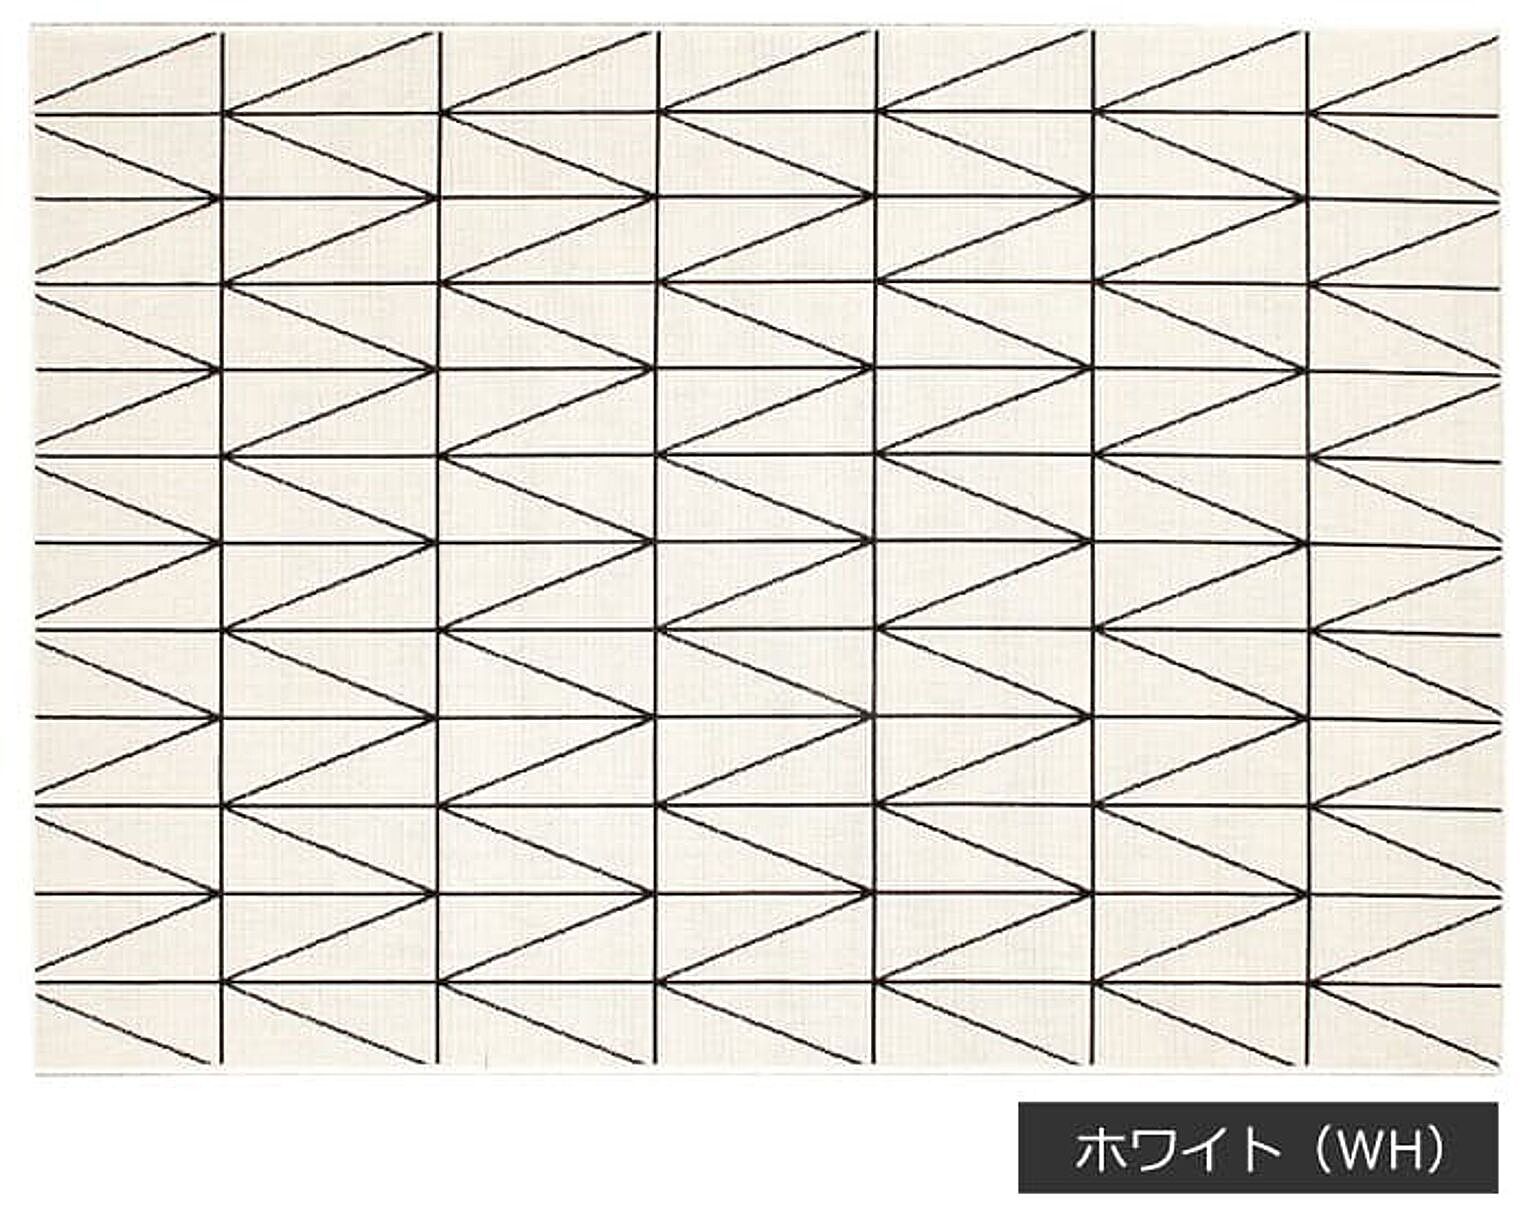 幾何柄ラグマット prevell プレーベル ネオ 約160×230cm 遊び毛防止 ホットカーペット対応 シンプル 四角形 長方形 北欧 ウィルトン織 ラグ カーペット ネオ 引っ越し 新生活